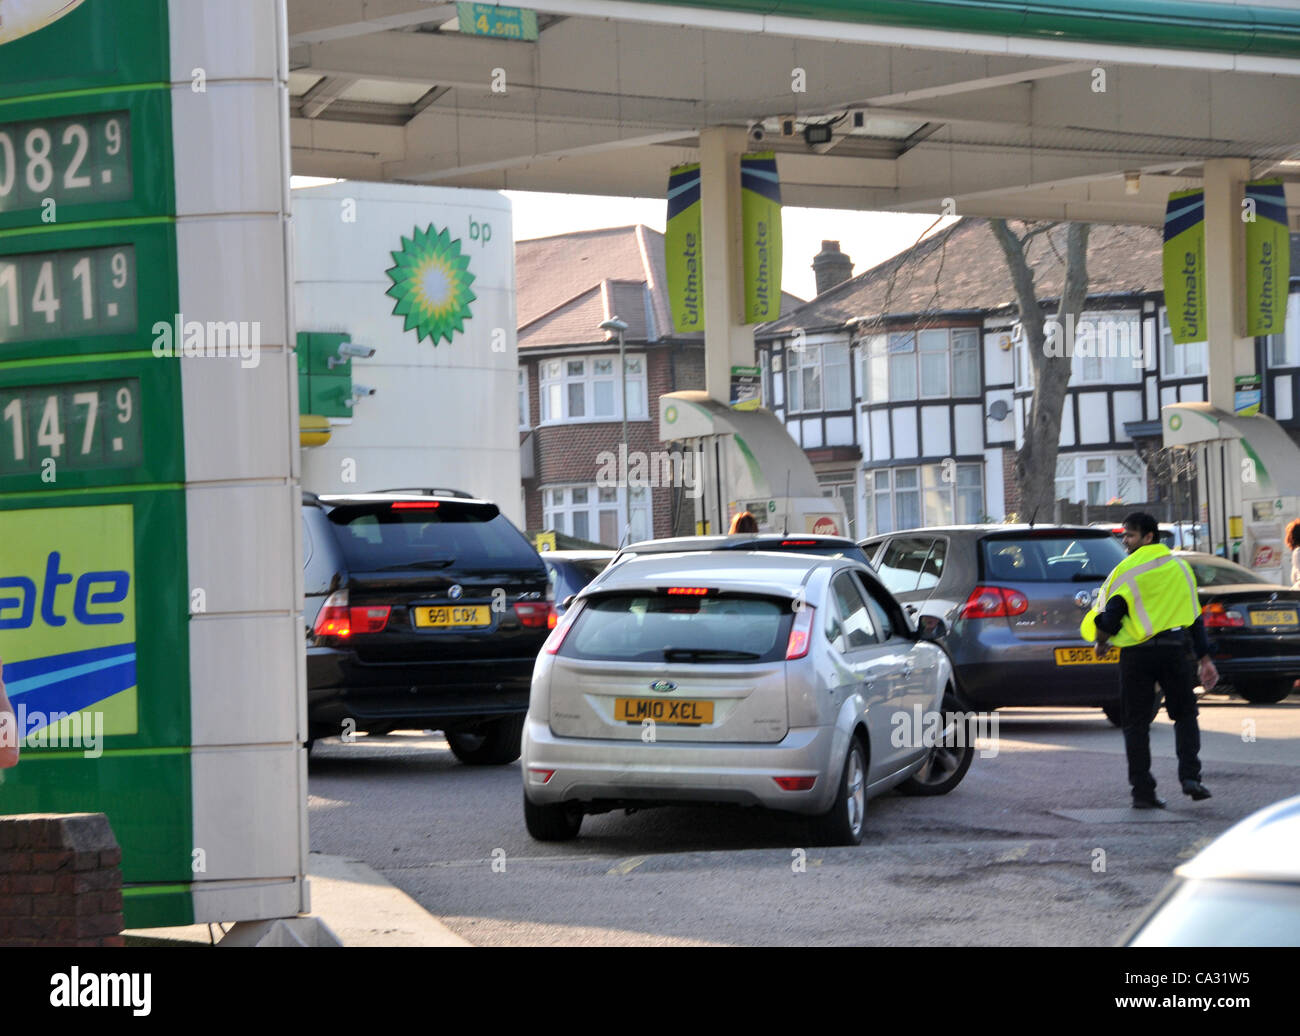 Cola en una gasolinera BP en Southgate, al norte de Londres, UK, el 29 Mar, 2012 como la amenaza de una huelga de transportistas telares. La gasolina y el diesel ahora más de £1.41 por litro. Crédito: Matthew Chattle/Alamy Live News Foto de stock